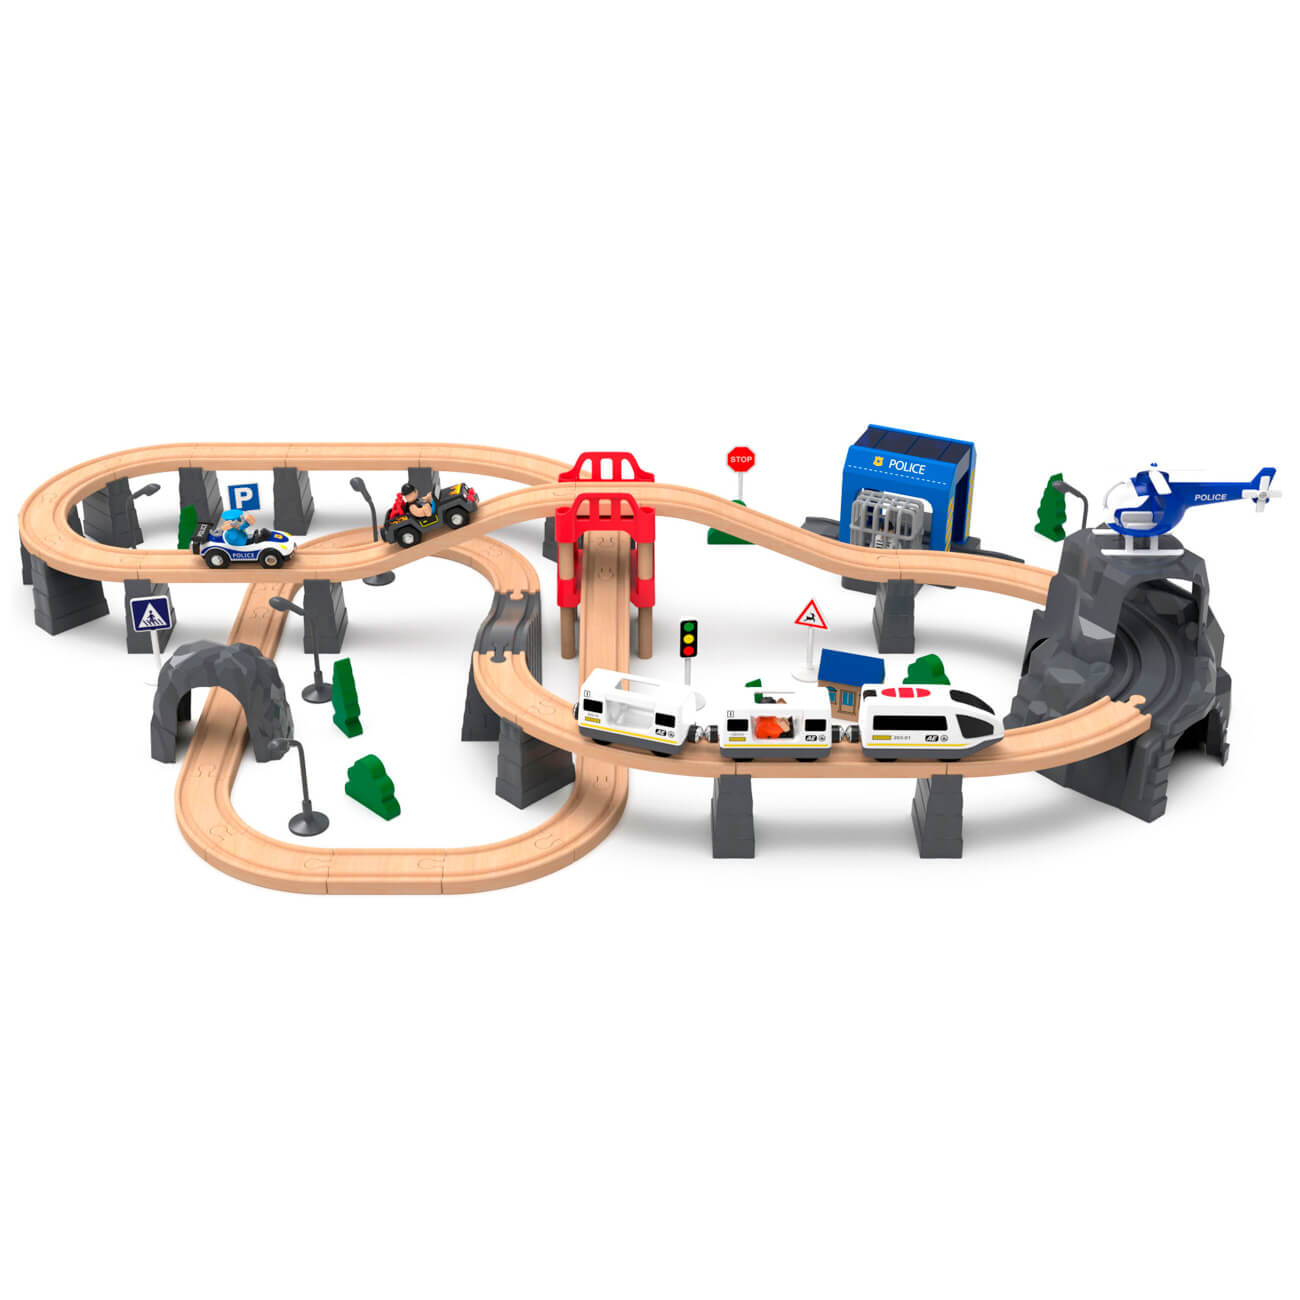 Железная дорога игрушечная, 98 см, дерево/пластик, Электропоезд, Game rail изображение № 1